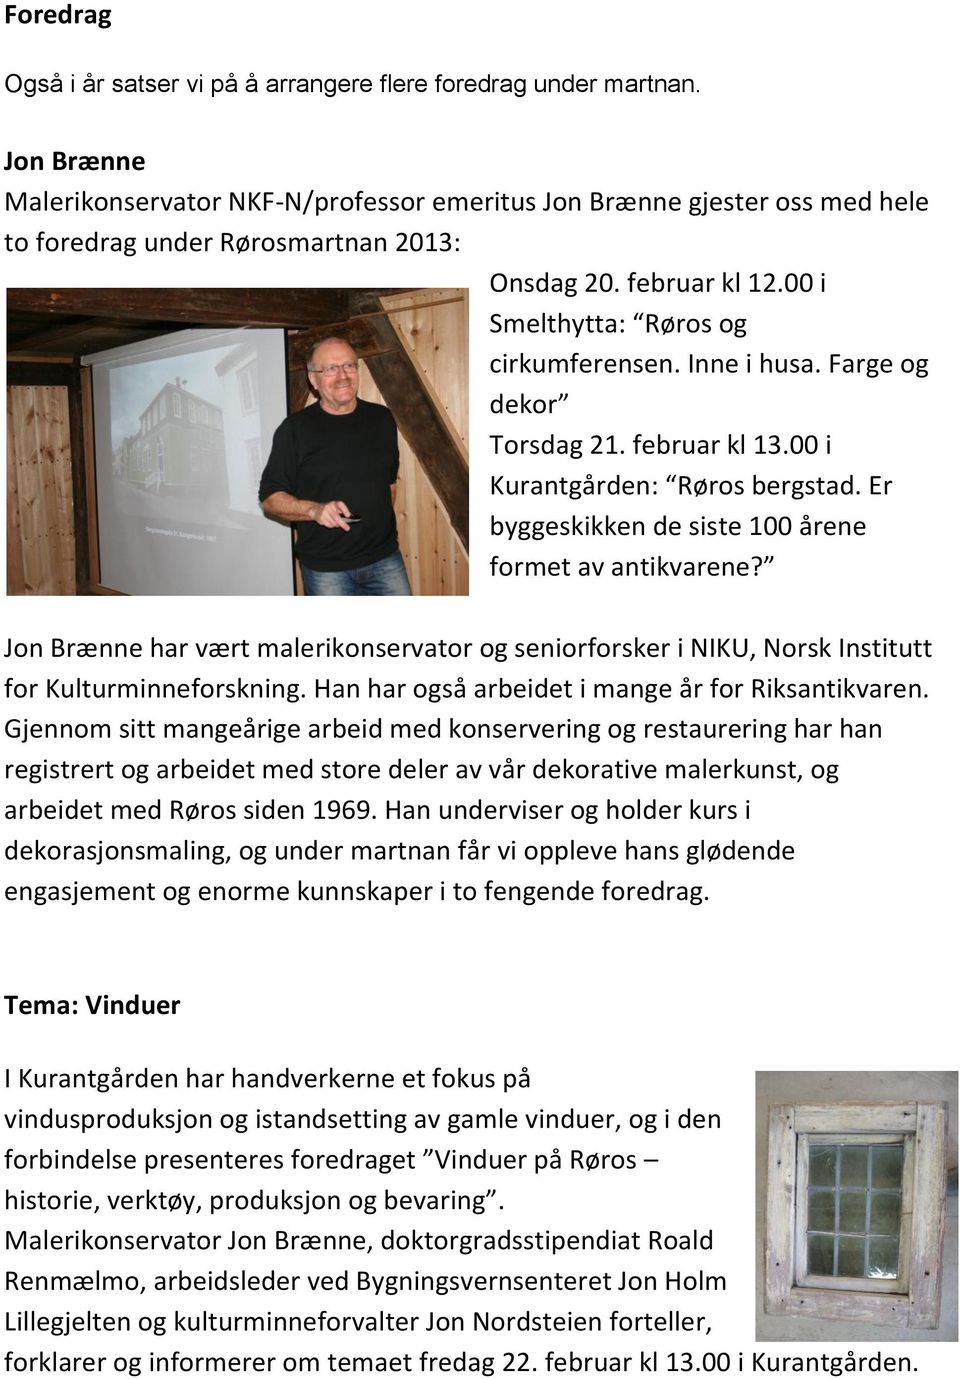 Inne i husa. Farge og dekor Torsdag 21. februar kl 13.00 i Kurantgården: Røros bergstad. Er byggeskikken de siste 100 årene formet av antikvarene?